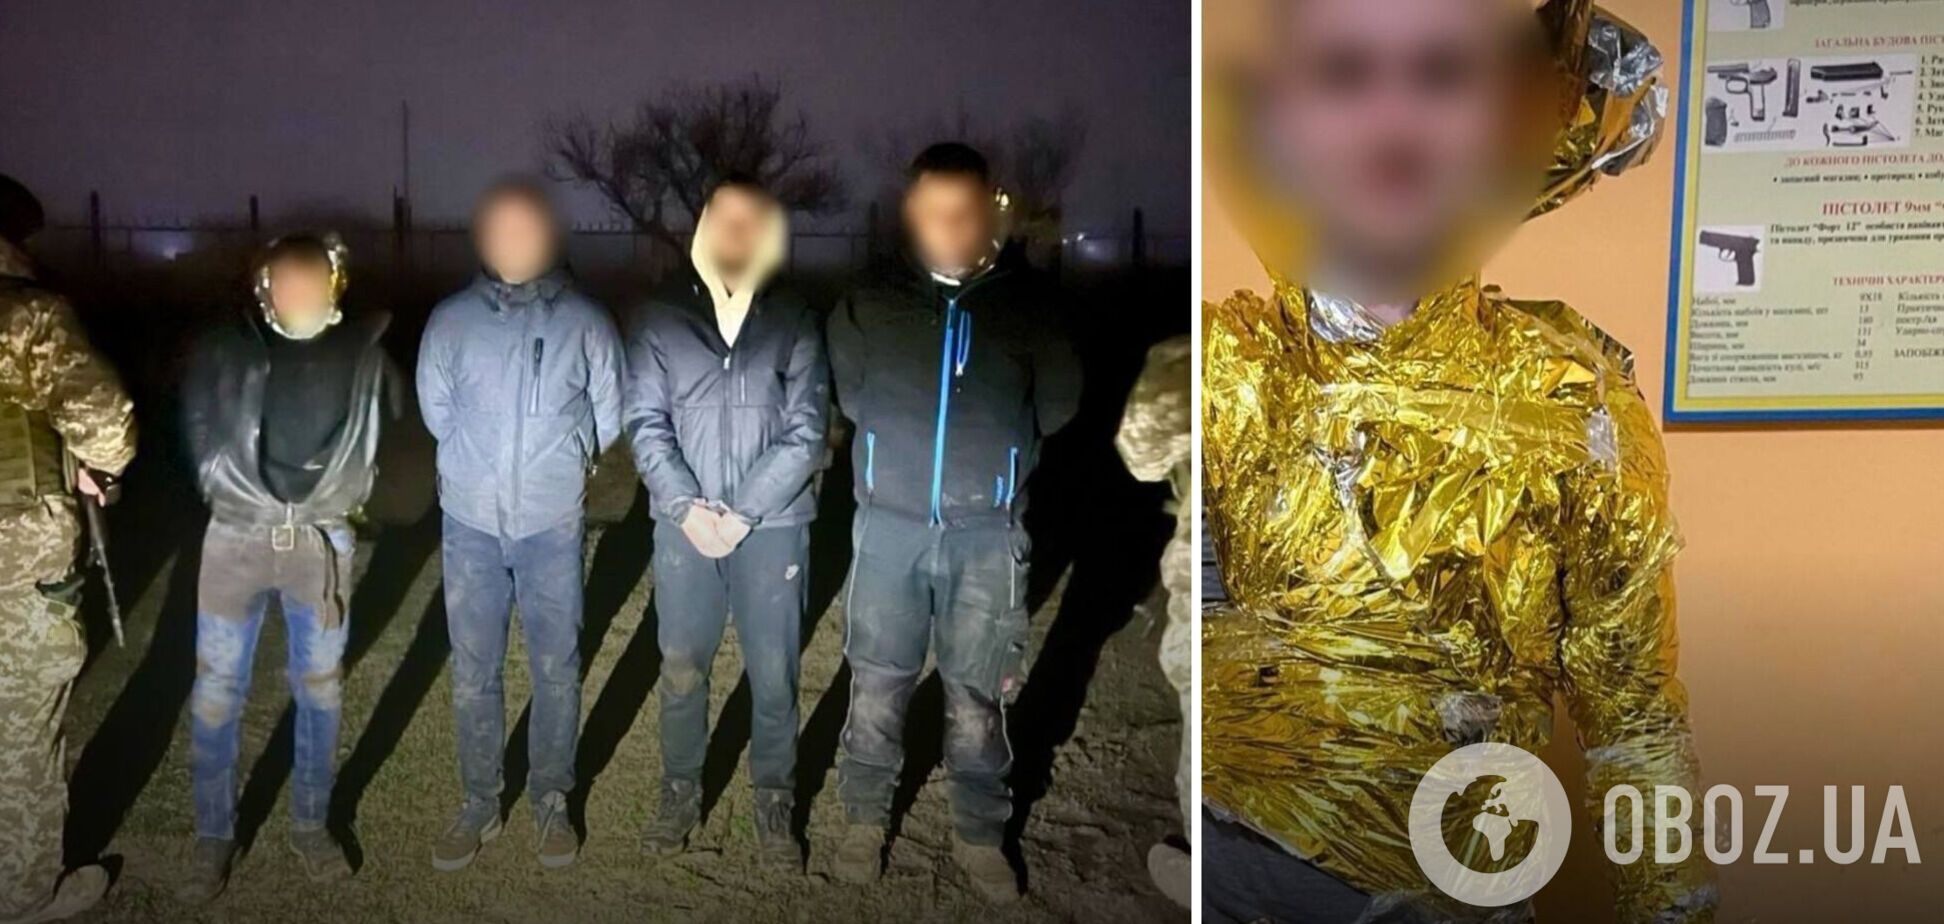 Придумали 'блестящий план': в Одесской области мужчины в изотермических одеялах хотели пересечь границу, но были пойманы. Фото